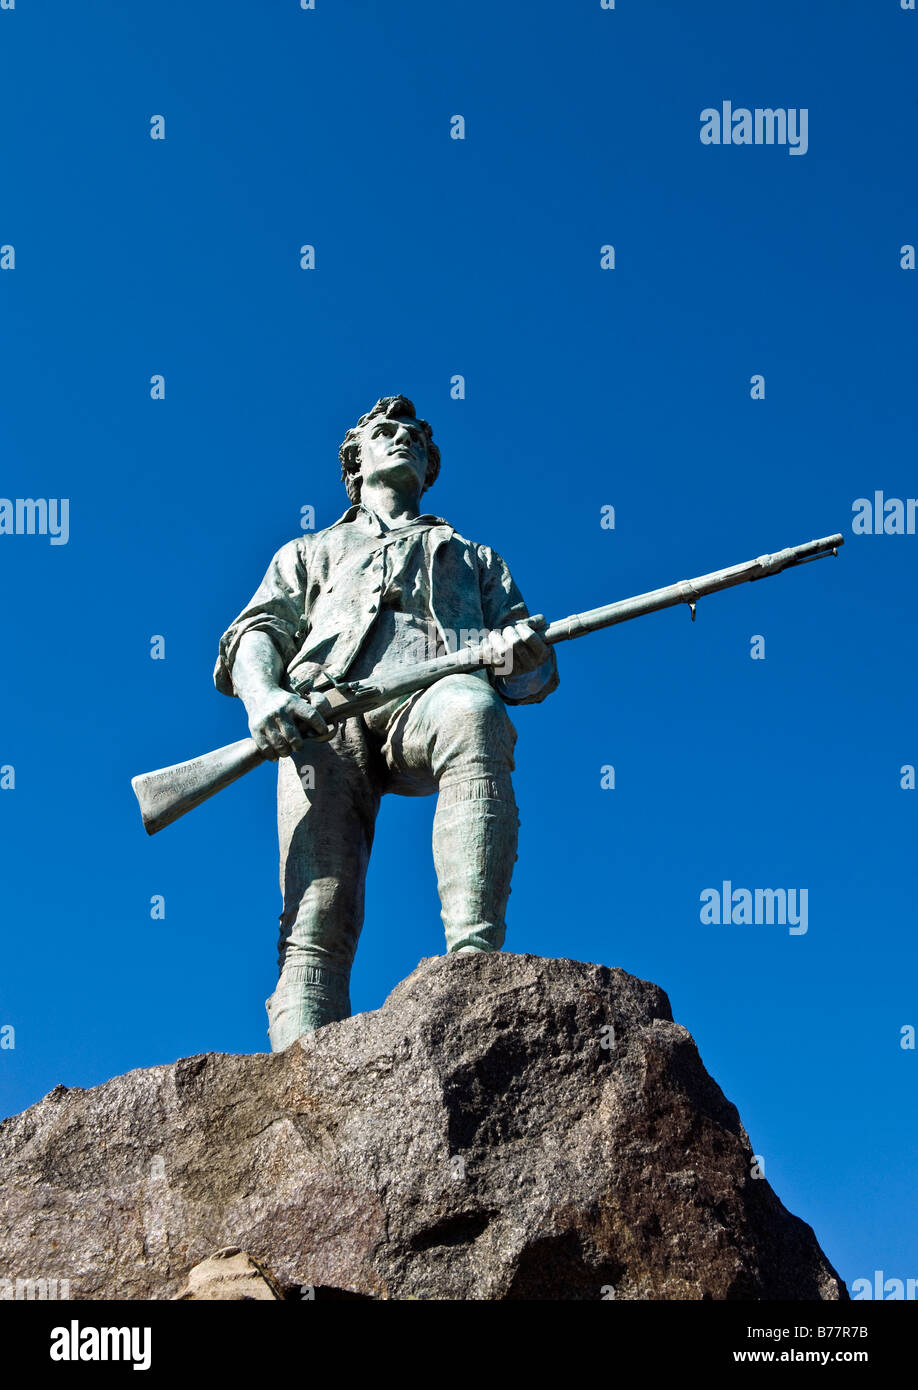 Minute man sculpture battle green lexington ma site de l'premiers coups de la révolution américaine Banque D'Images